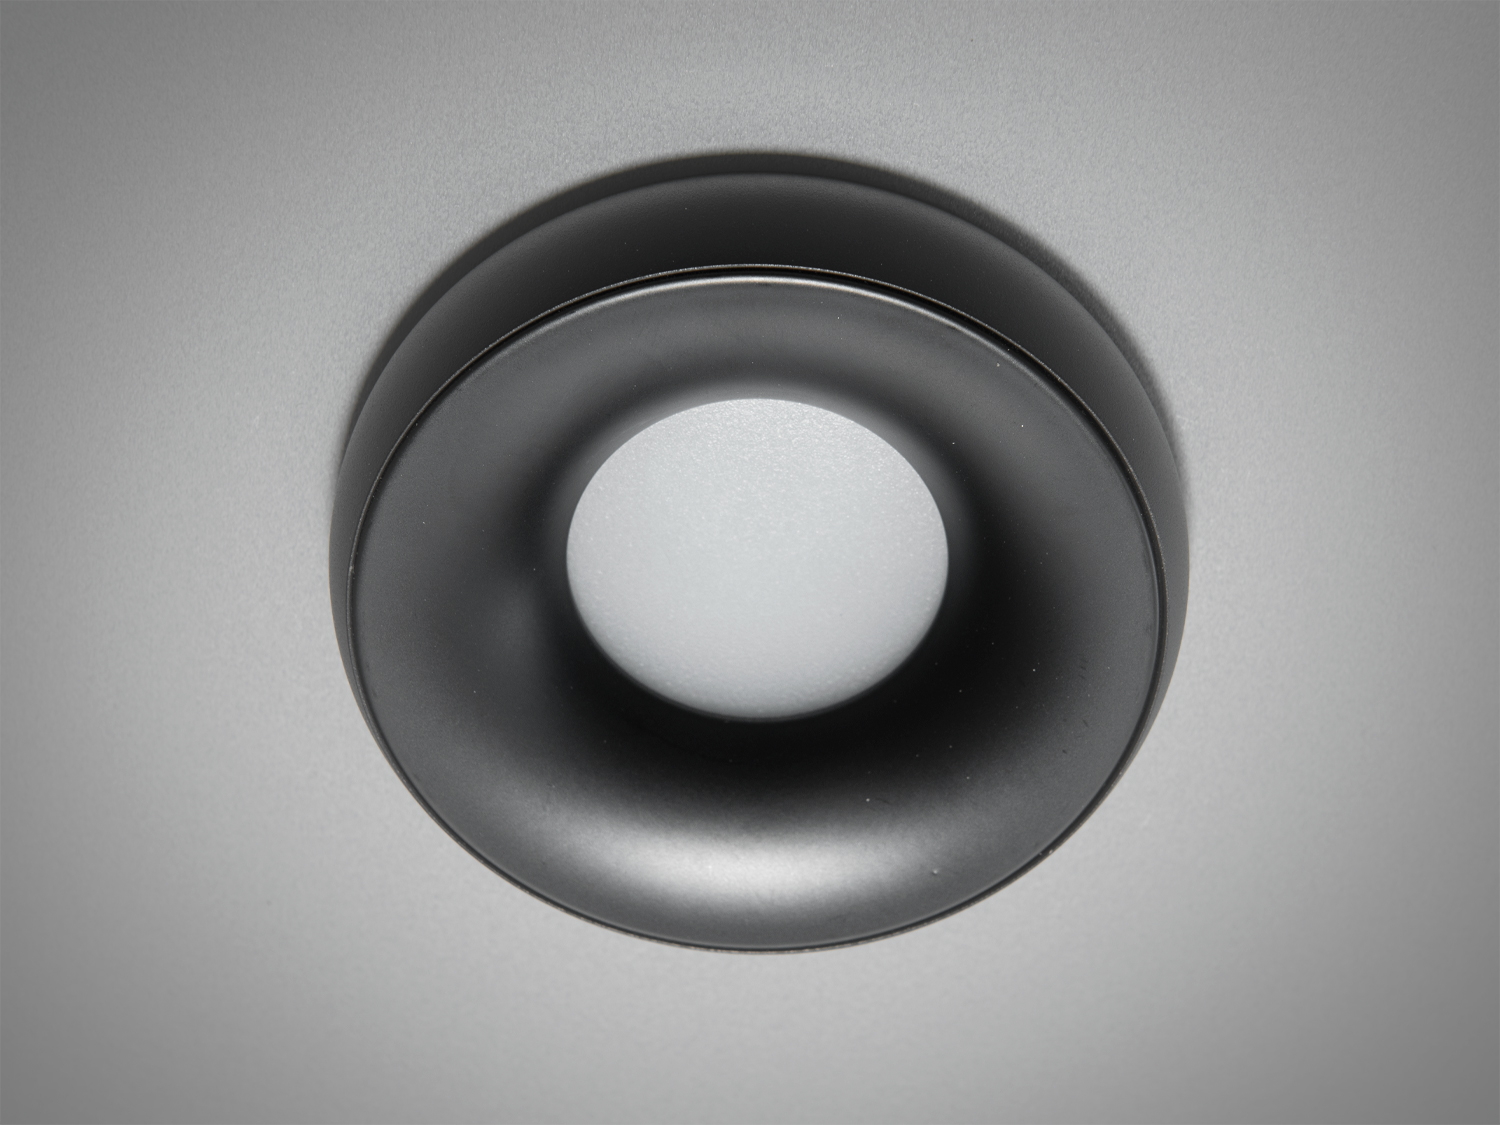 Круглий чорний точковий врізний світильник із алюмінію. Завдяки високій якості та стильному дизайну, світильники Діаша здатні задовольнити потреби найвимогливіших клієнтів.